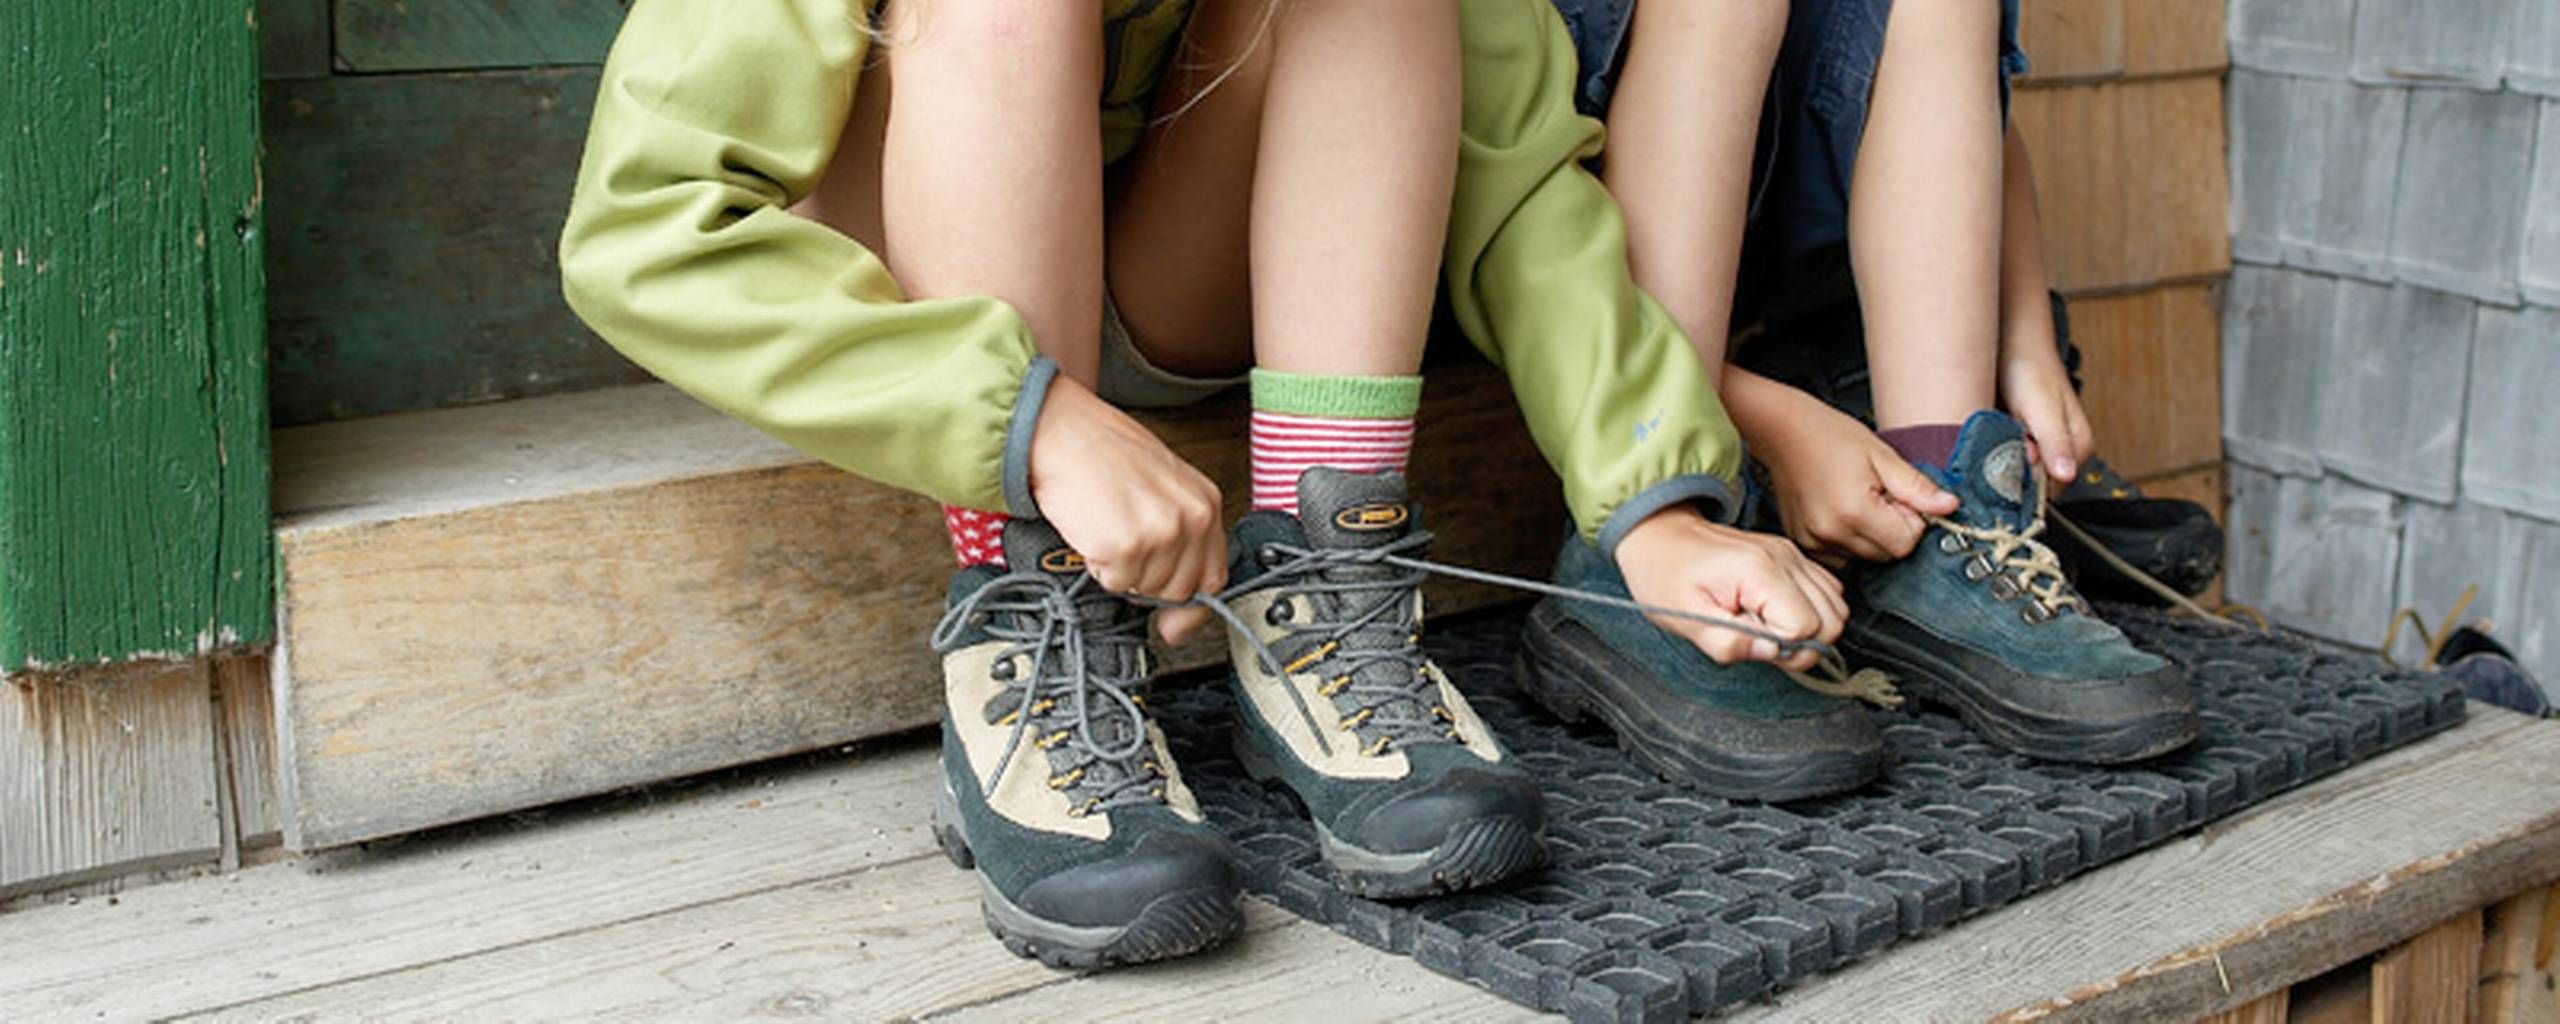 Børn gerne arve brugte sko